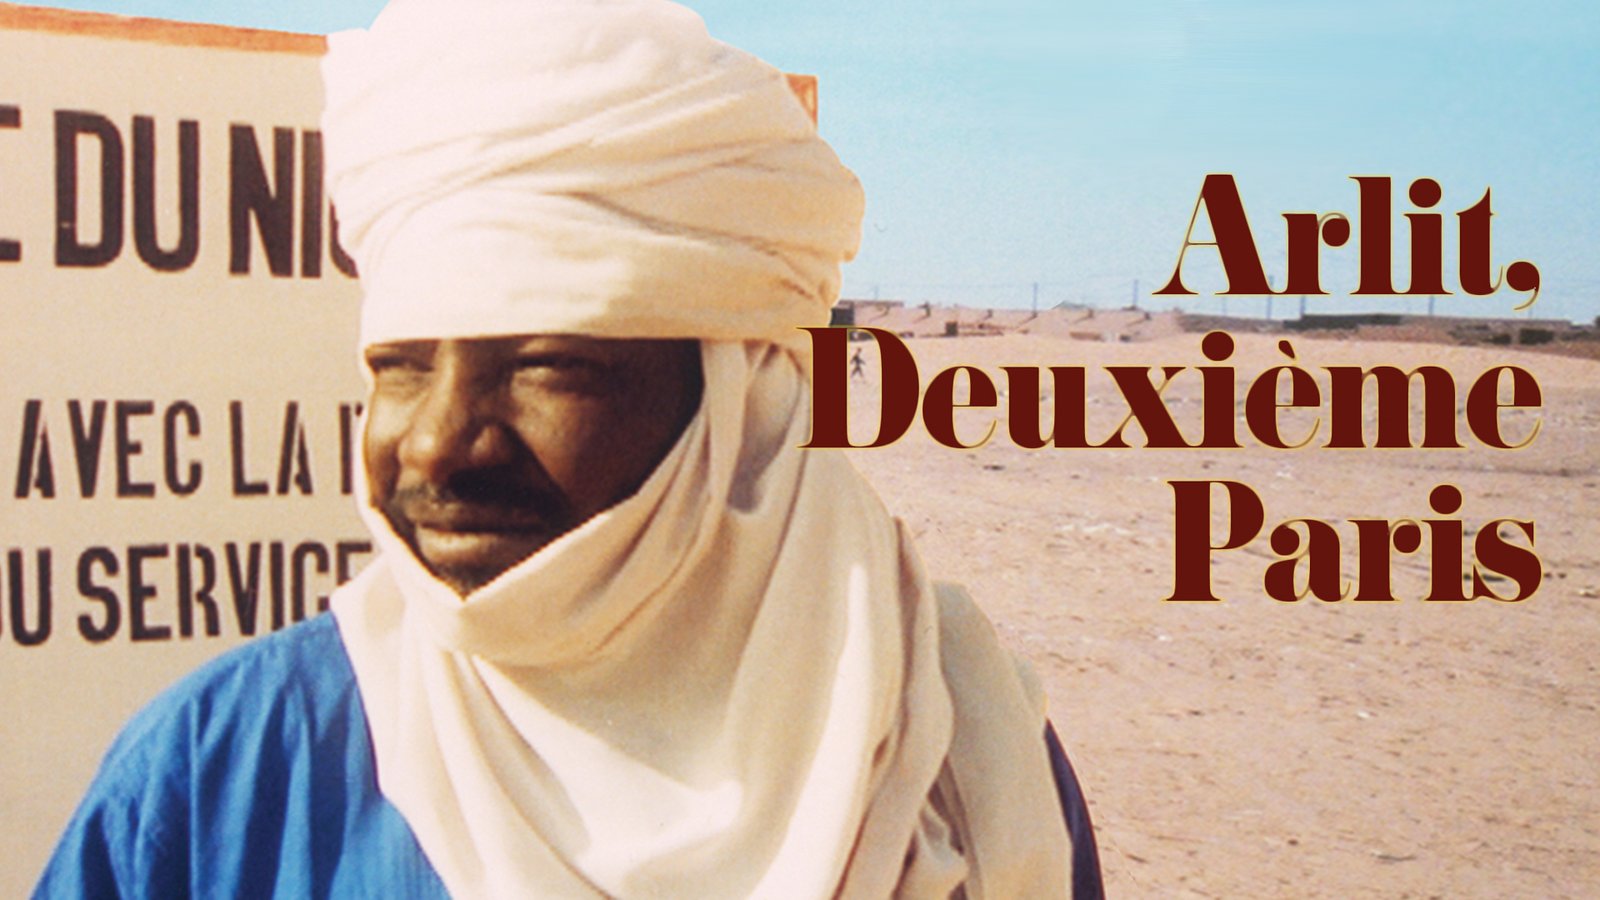 Arlit: Deuxieme Paris - Environmental Racism in the Sahara Desert